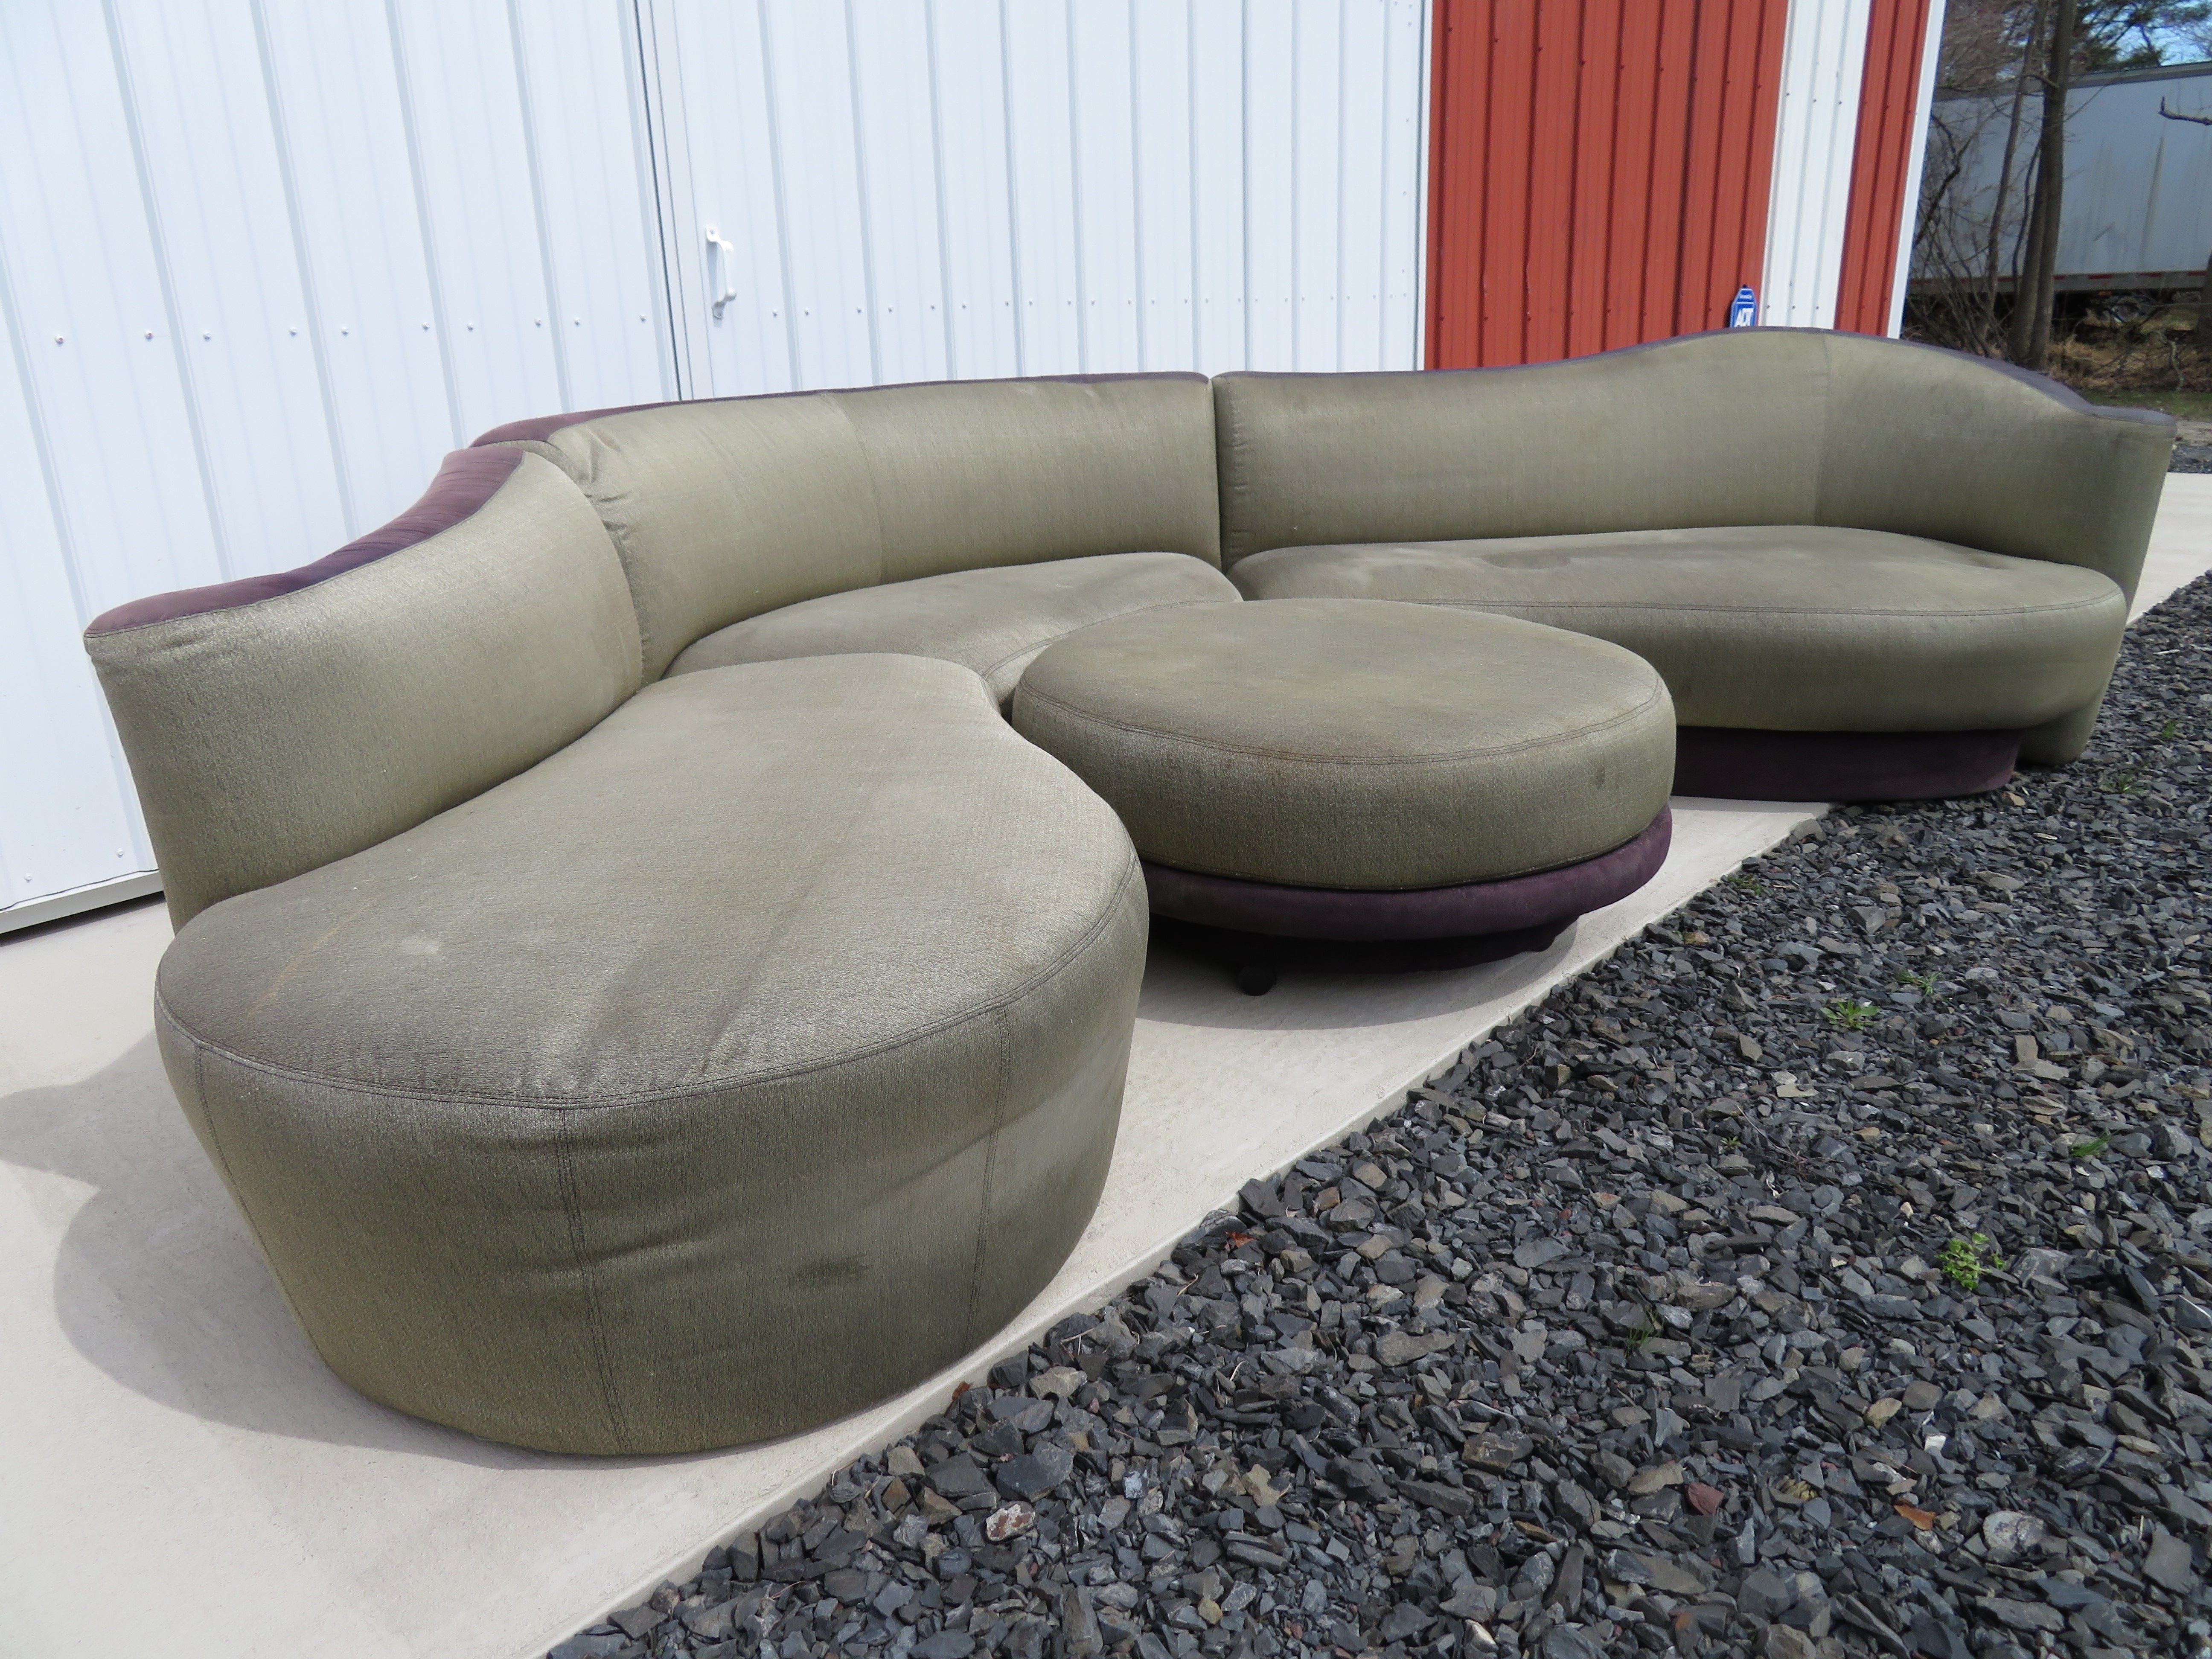 Scrumptious 4-piece serpentine sectional sofa designed by Vladimir Kagan, made by Weiman. Nous adorons toutes les courbes et le pouf rond roulant que ce canapé sectionnel comprend. Cet ensemble a conservé son tissu d'origine et devra être retapissé.